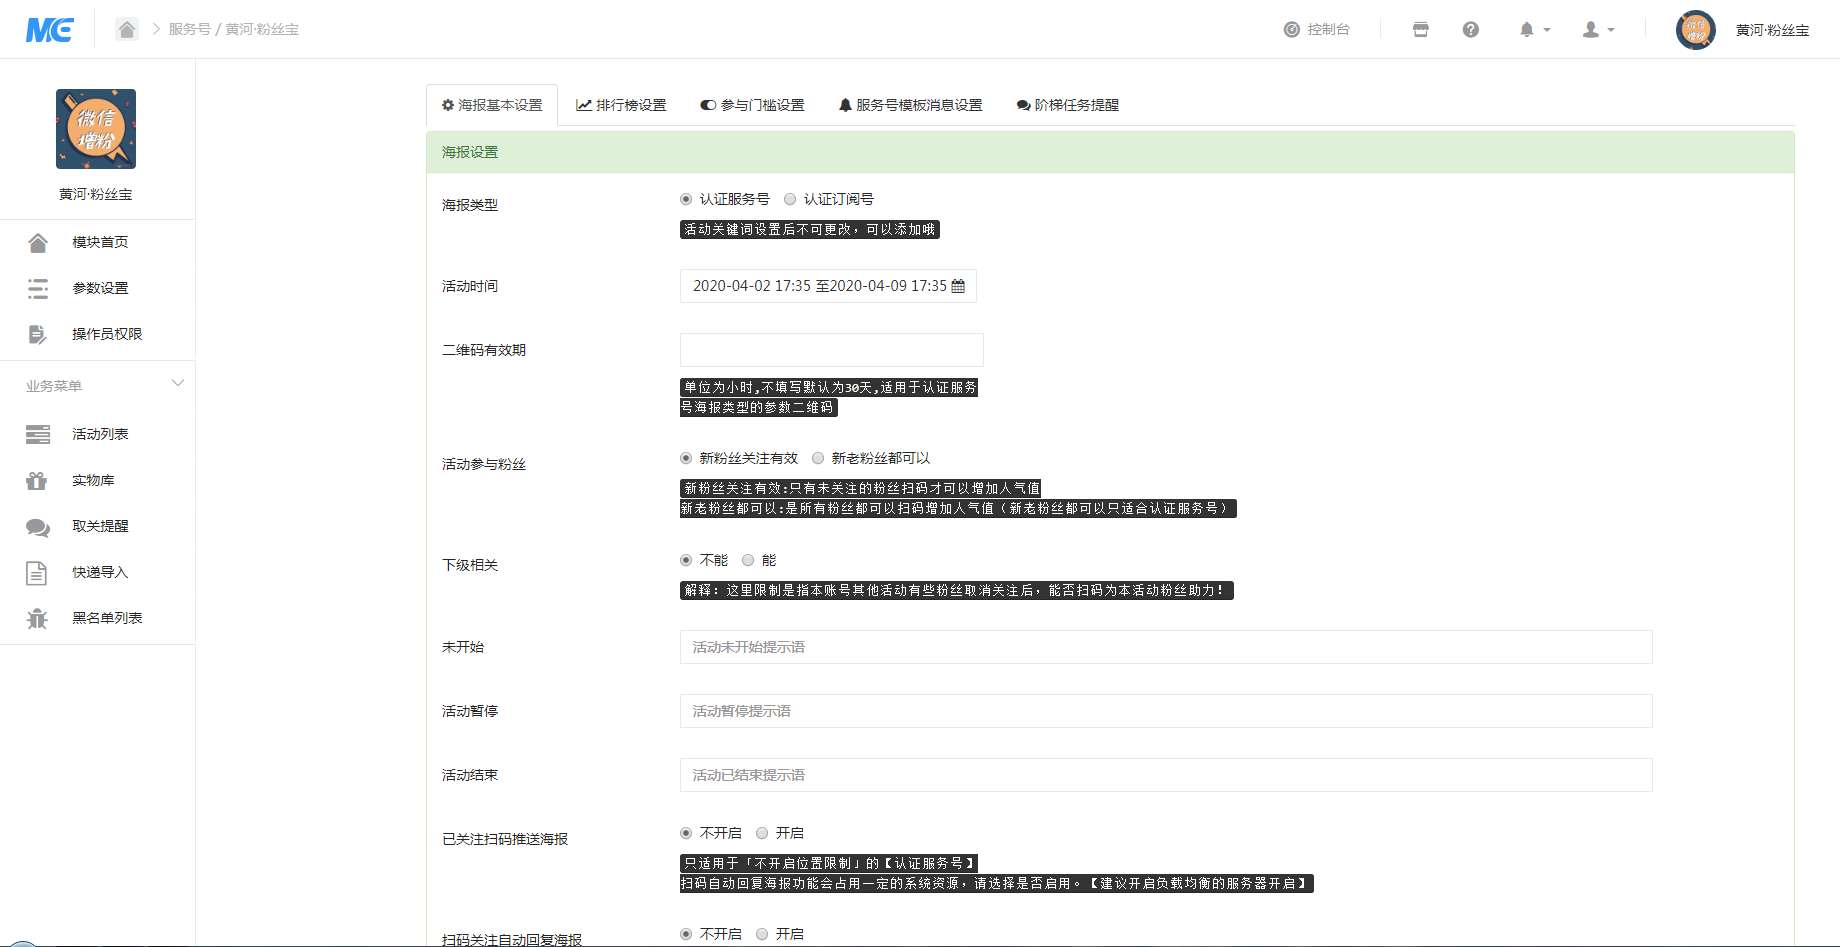 黄河粉丝宝任务宝 V11.5.0全开源解密版 感谢热心网友测试